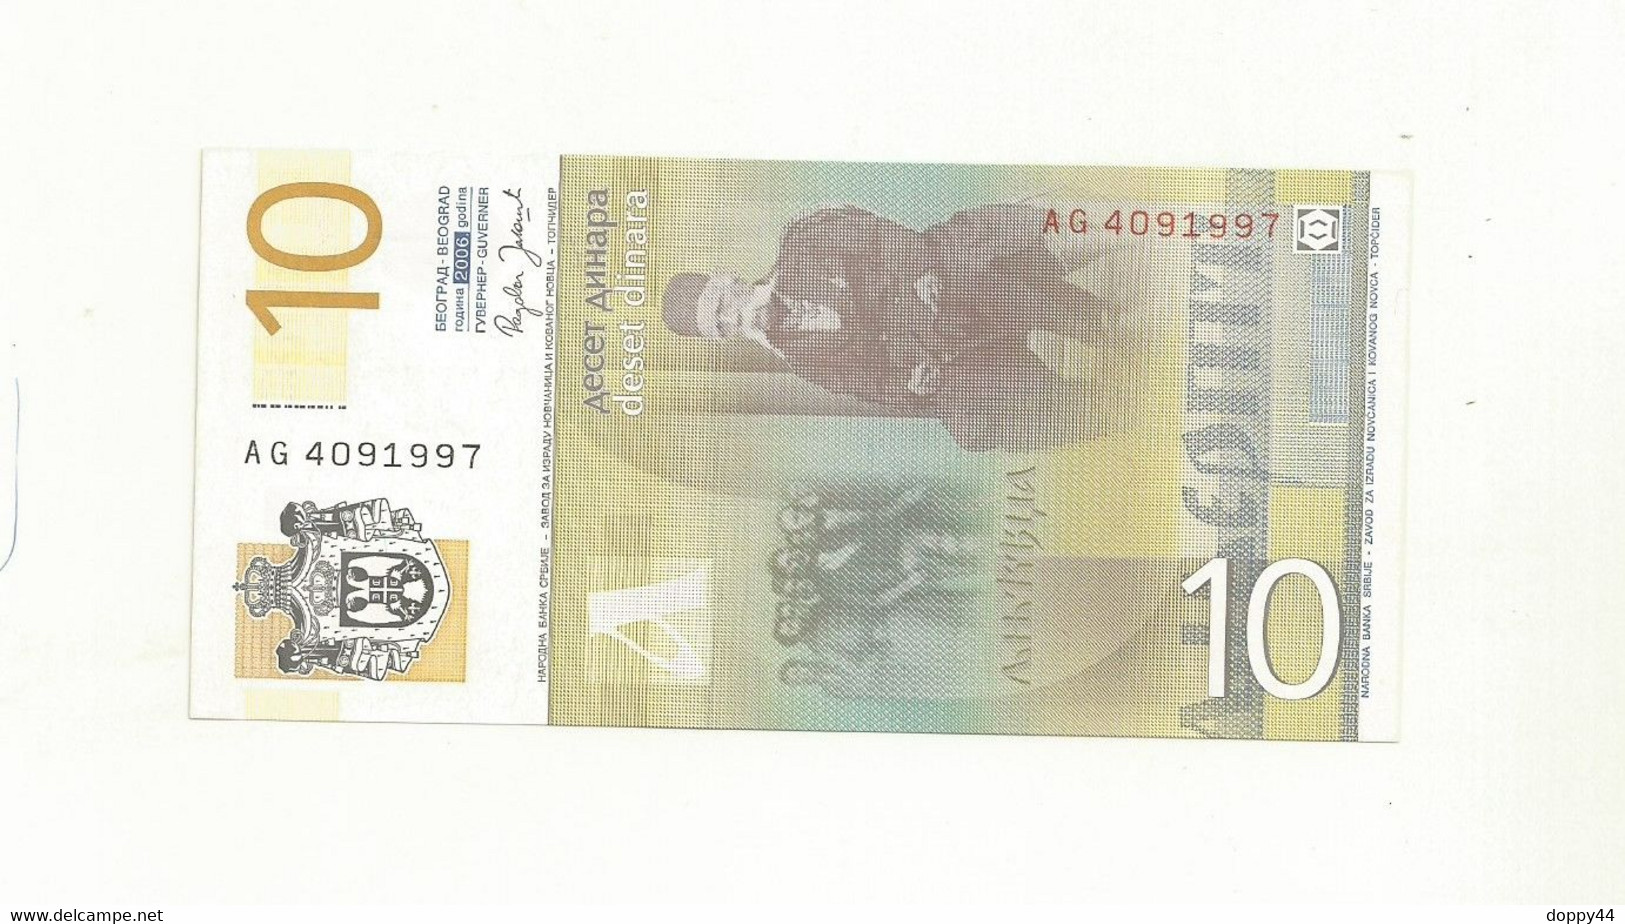 BILLET NEUF SERBIE 10 DINAR EMIS EN 2006. - Servië